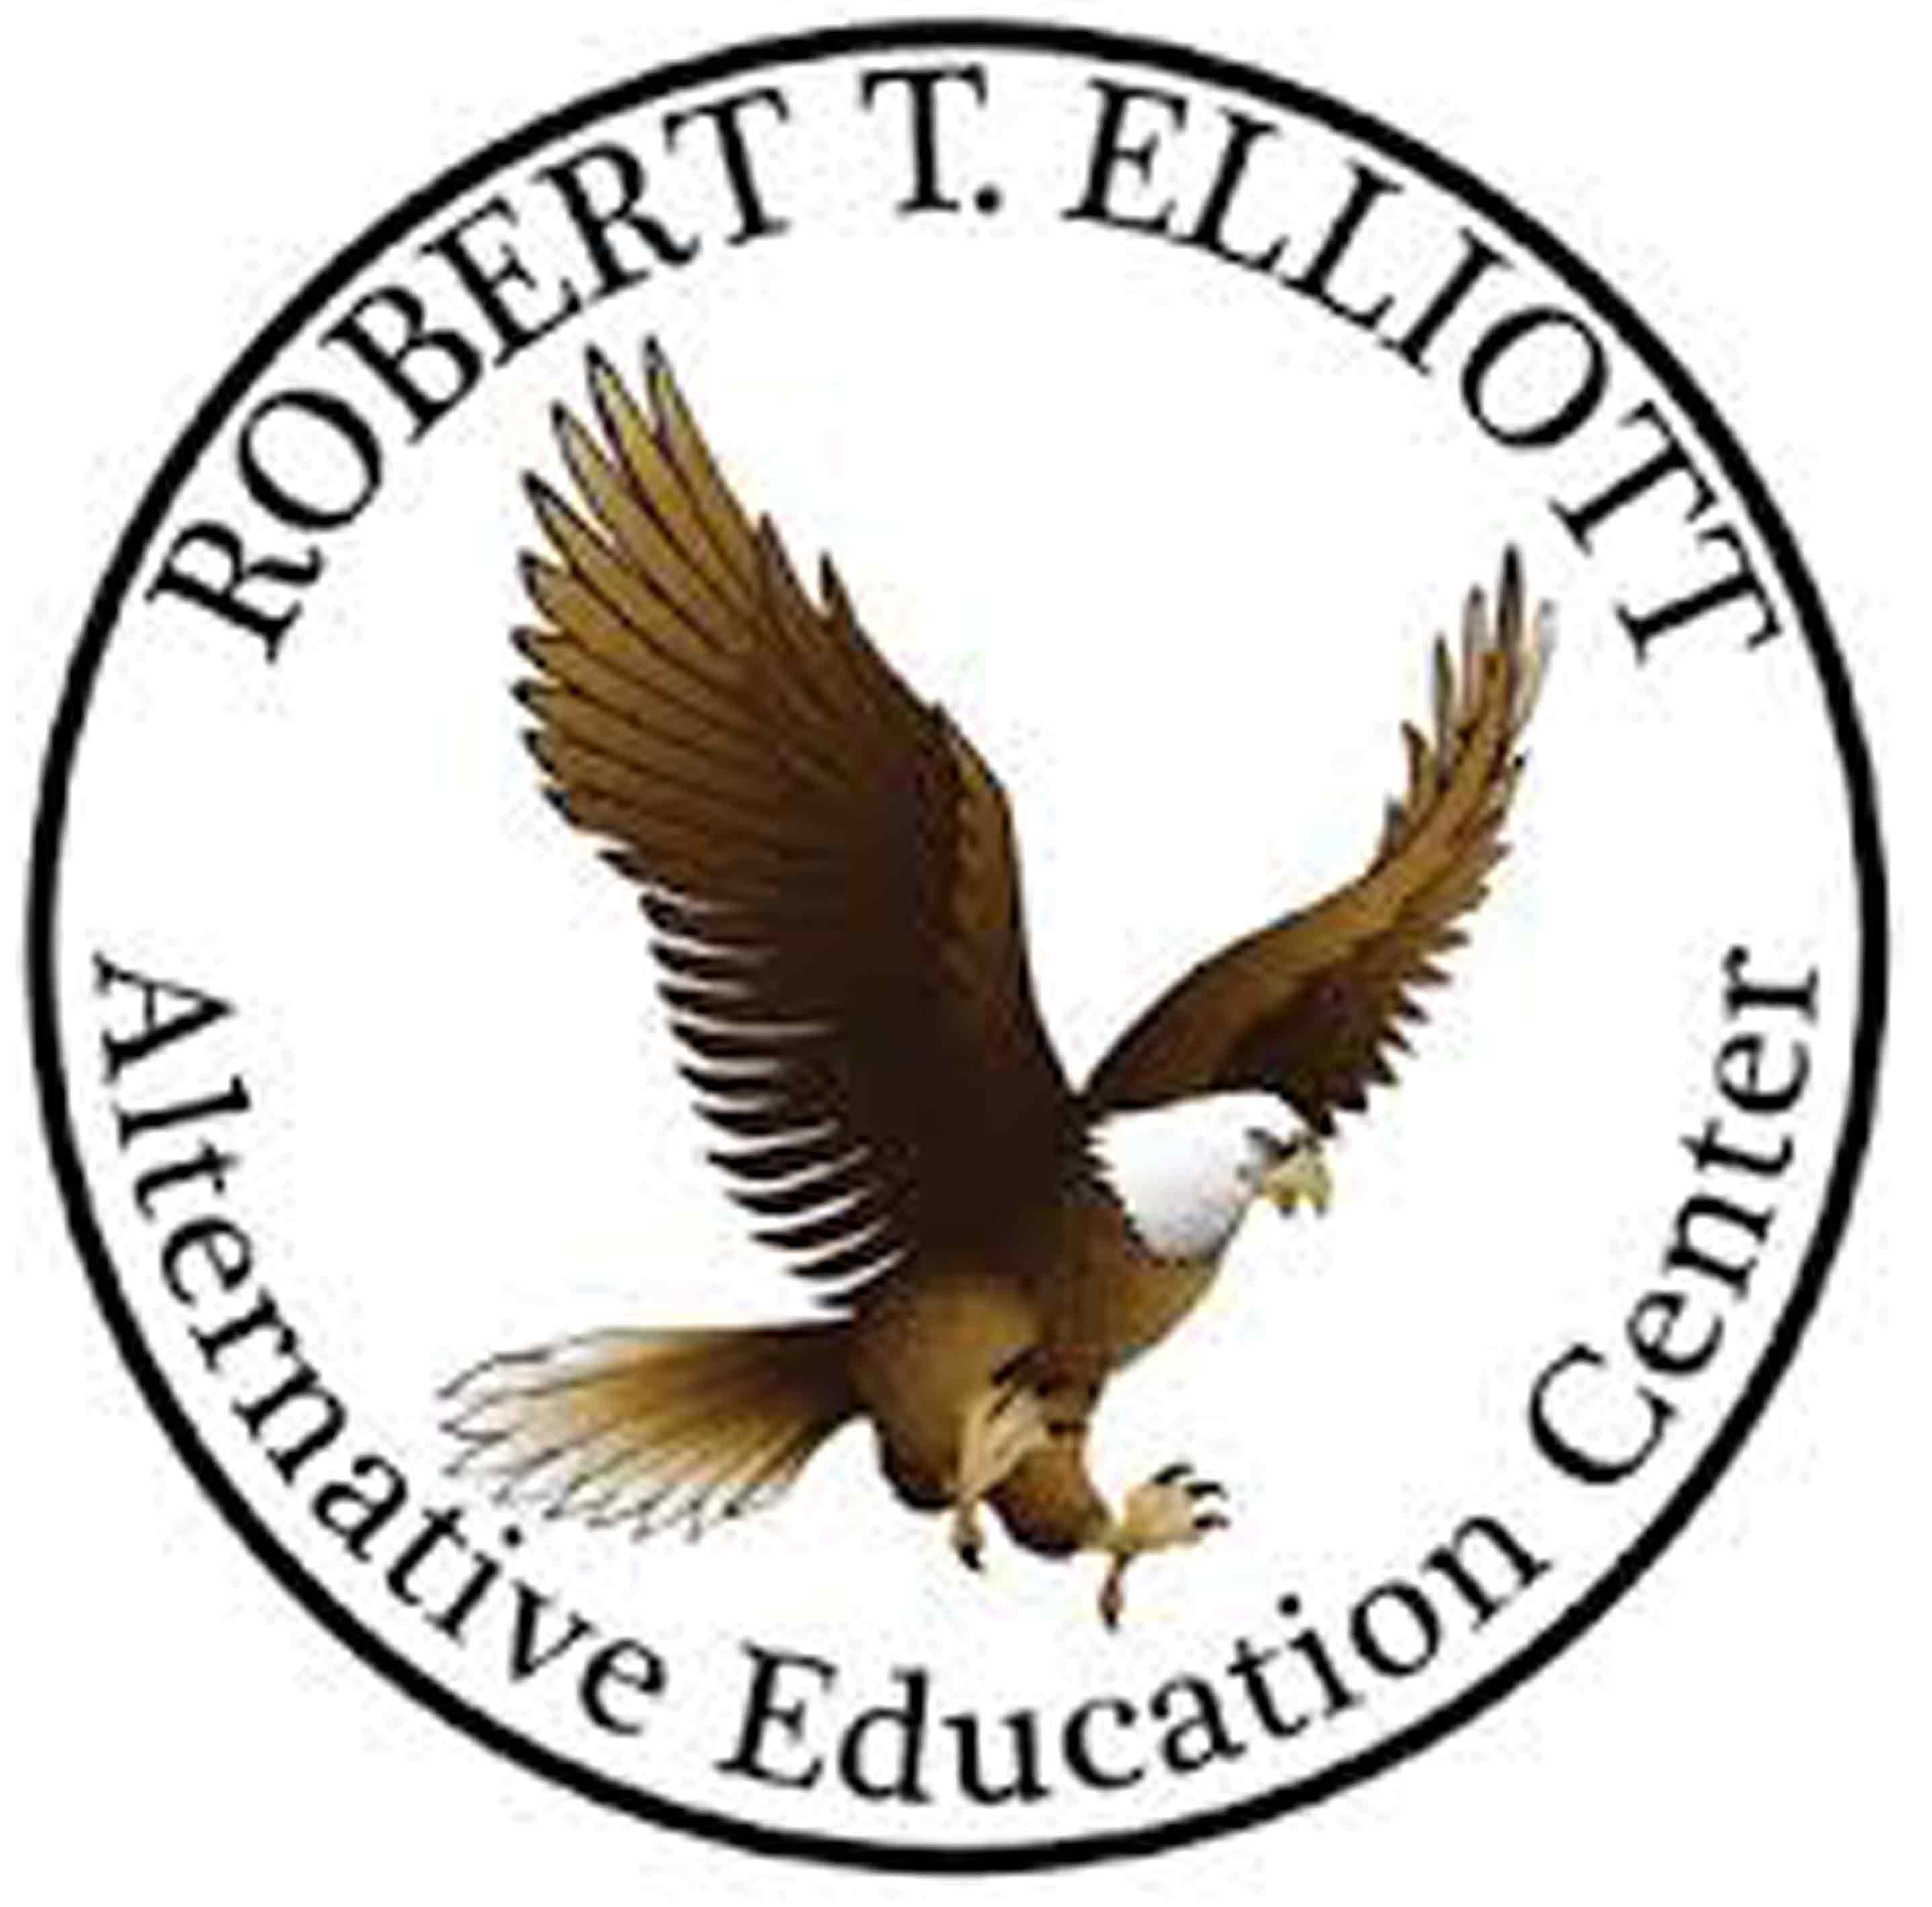 Elliott Alternative Education Center logo